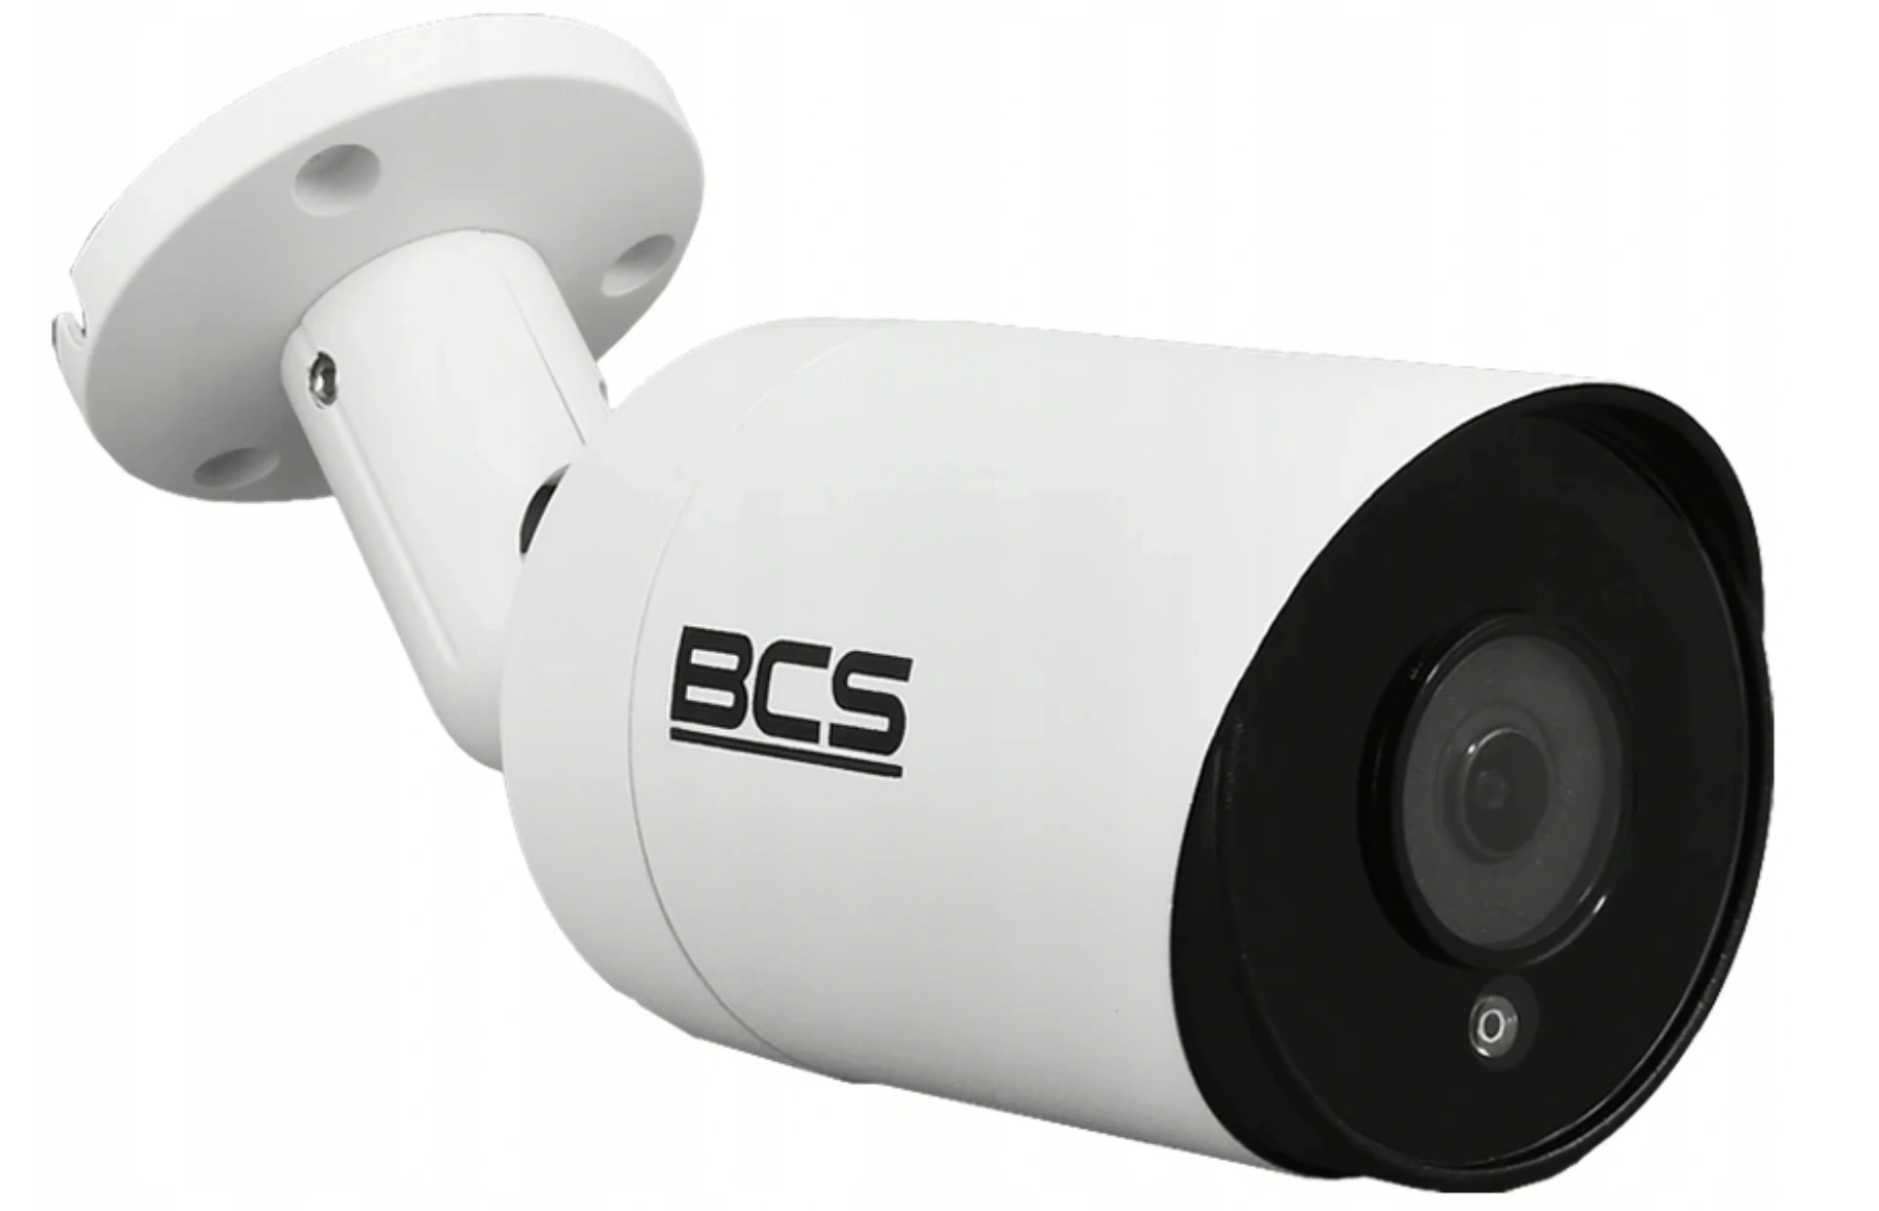 Szeroka gama kolorystyczna kamer CCTV do monitoringu wizyjnego na terenie śląska i okolic